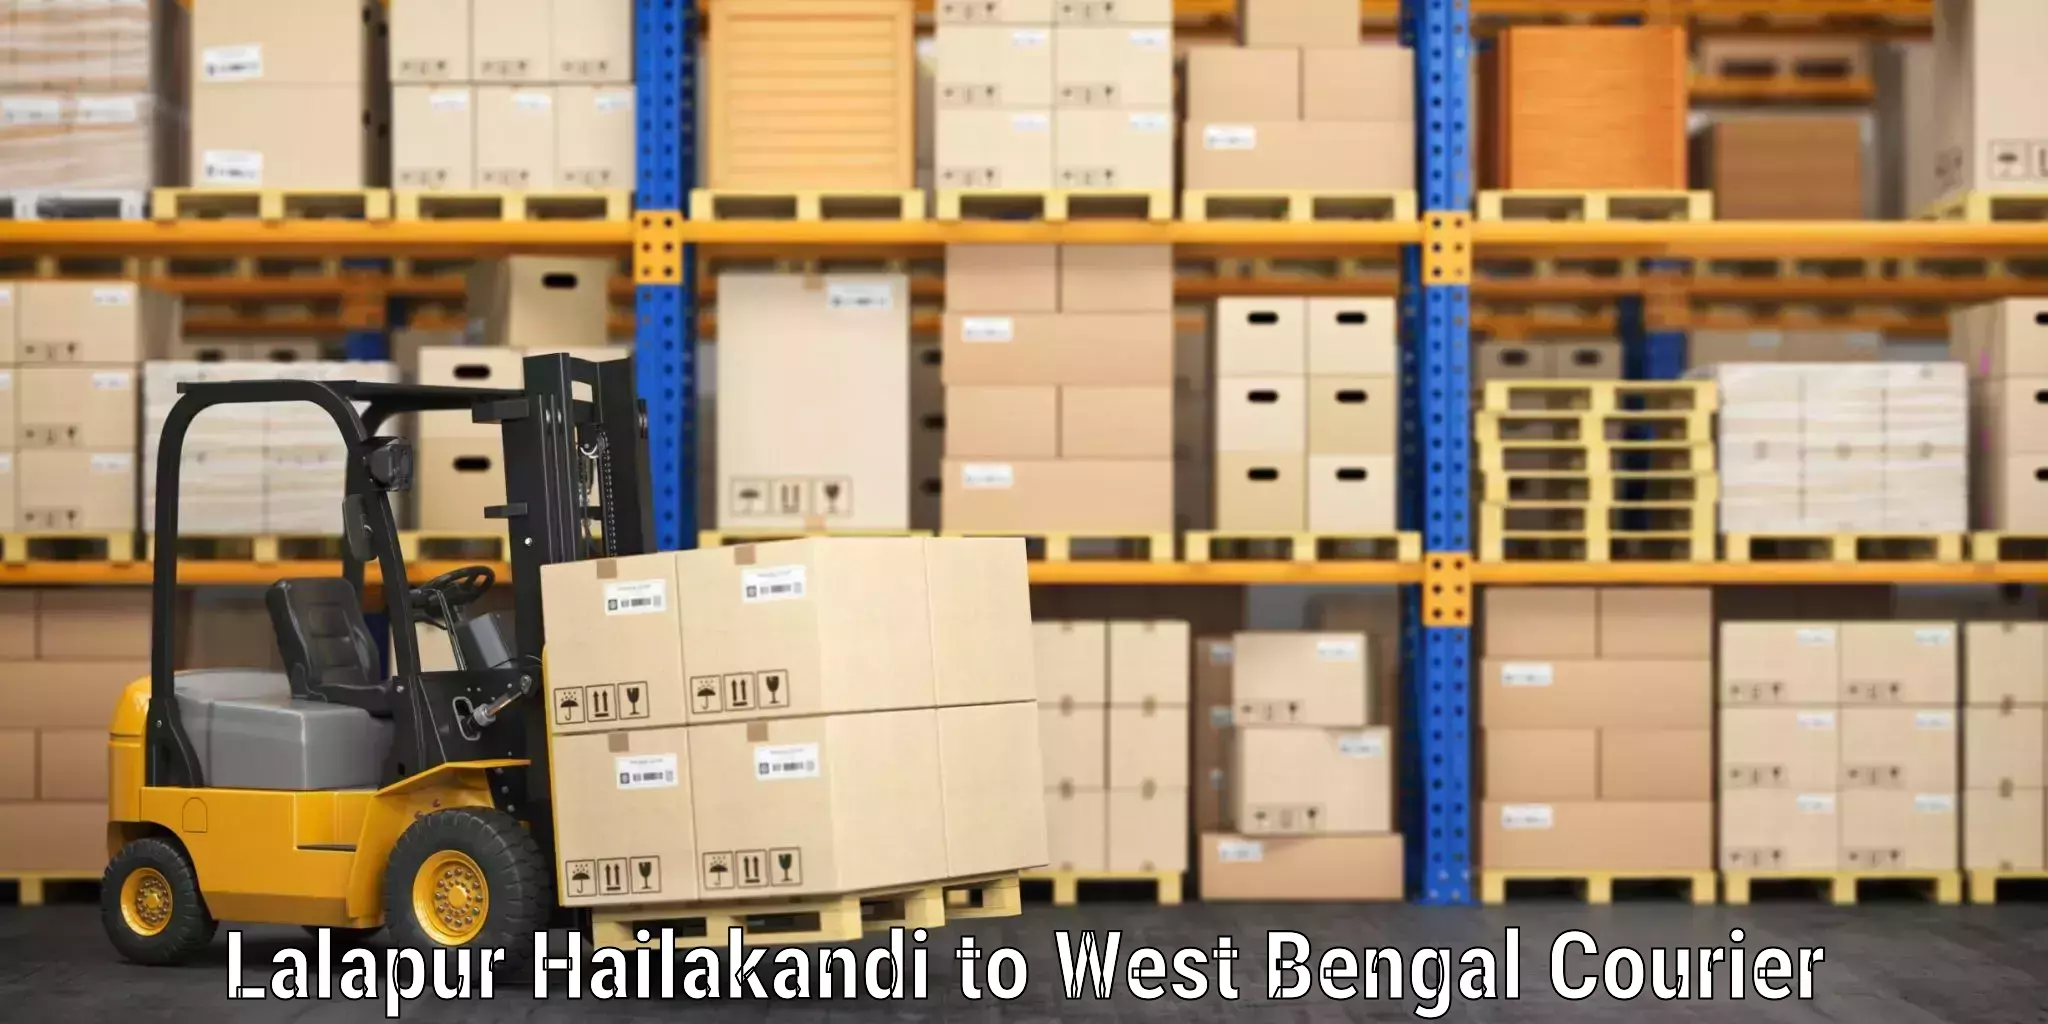 Baggage delivery management Lalapur Hailakandi to Naihati